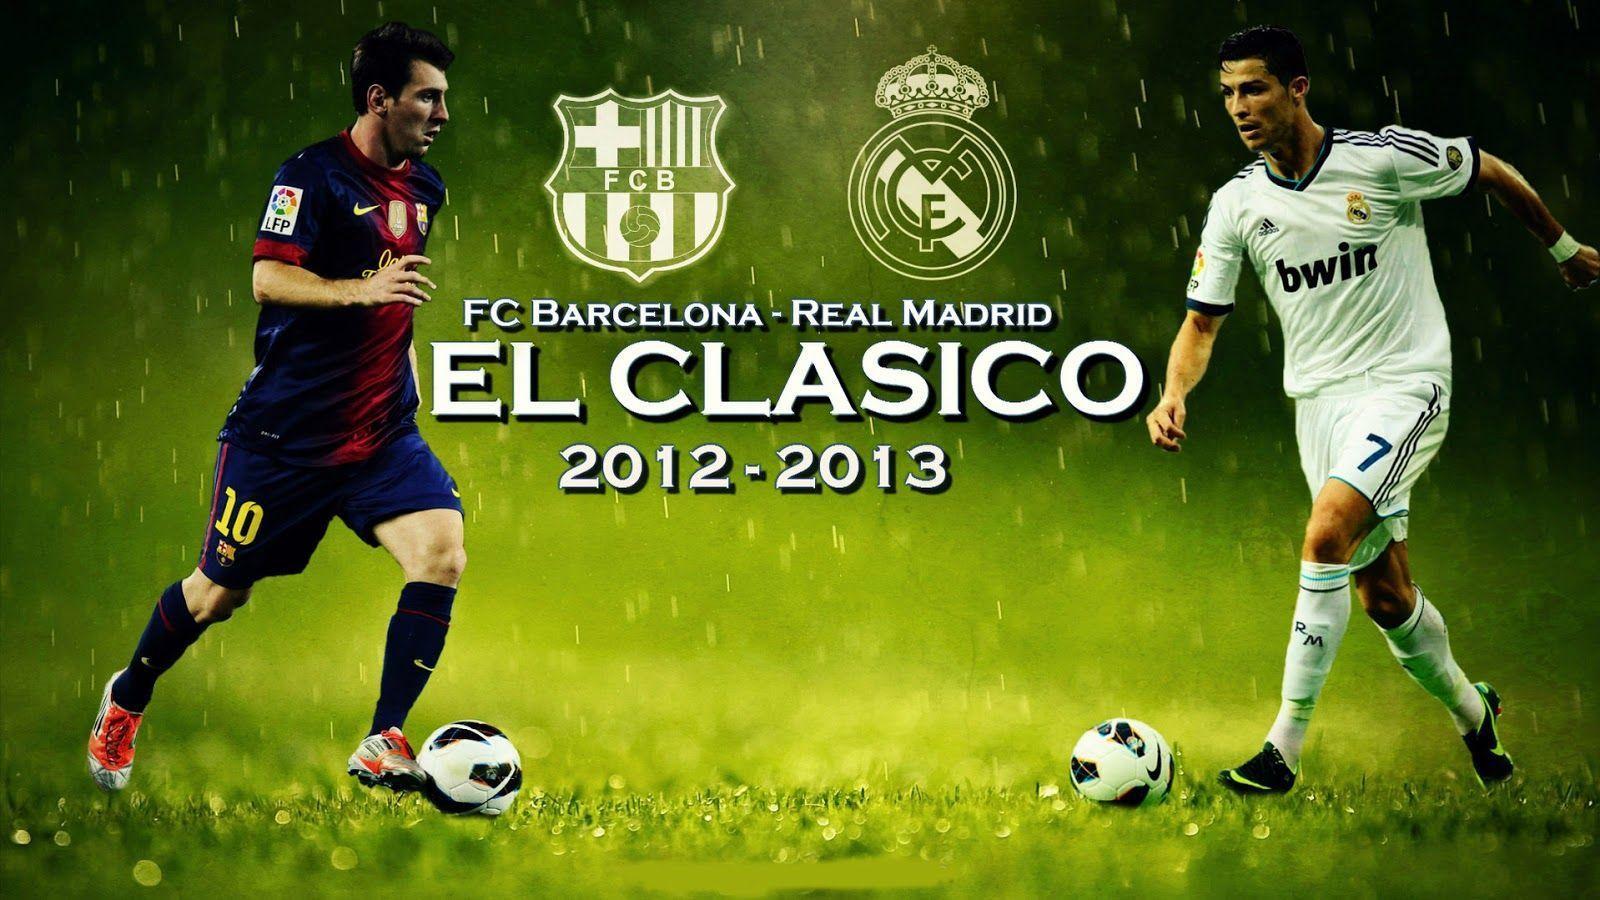 Ronaldo Vs Messi Fresh HD Wallpaper 2012 13. All Sports Stars